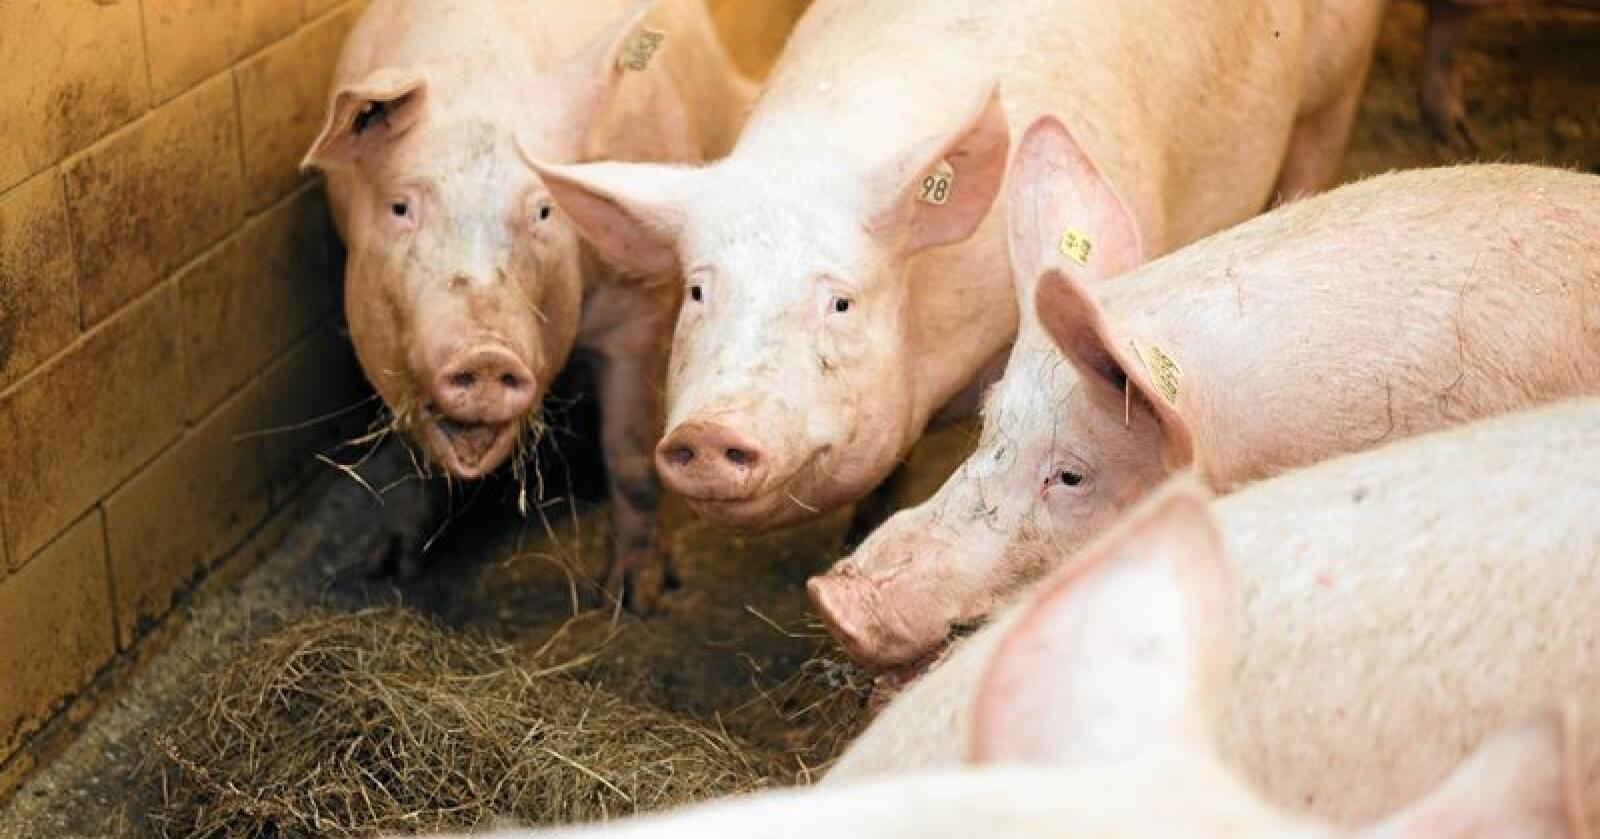 Tause: Mens debatten raser i kommentarfeltene om dyrevelferden i svinenæringen, er brasjen helt taus. Foto: Benjamin Hernes Vogl